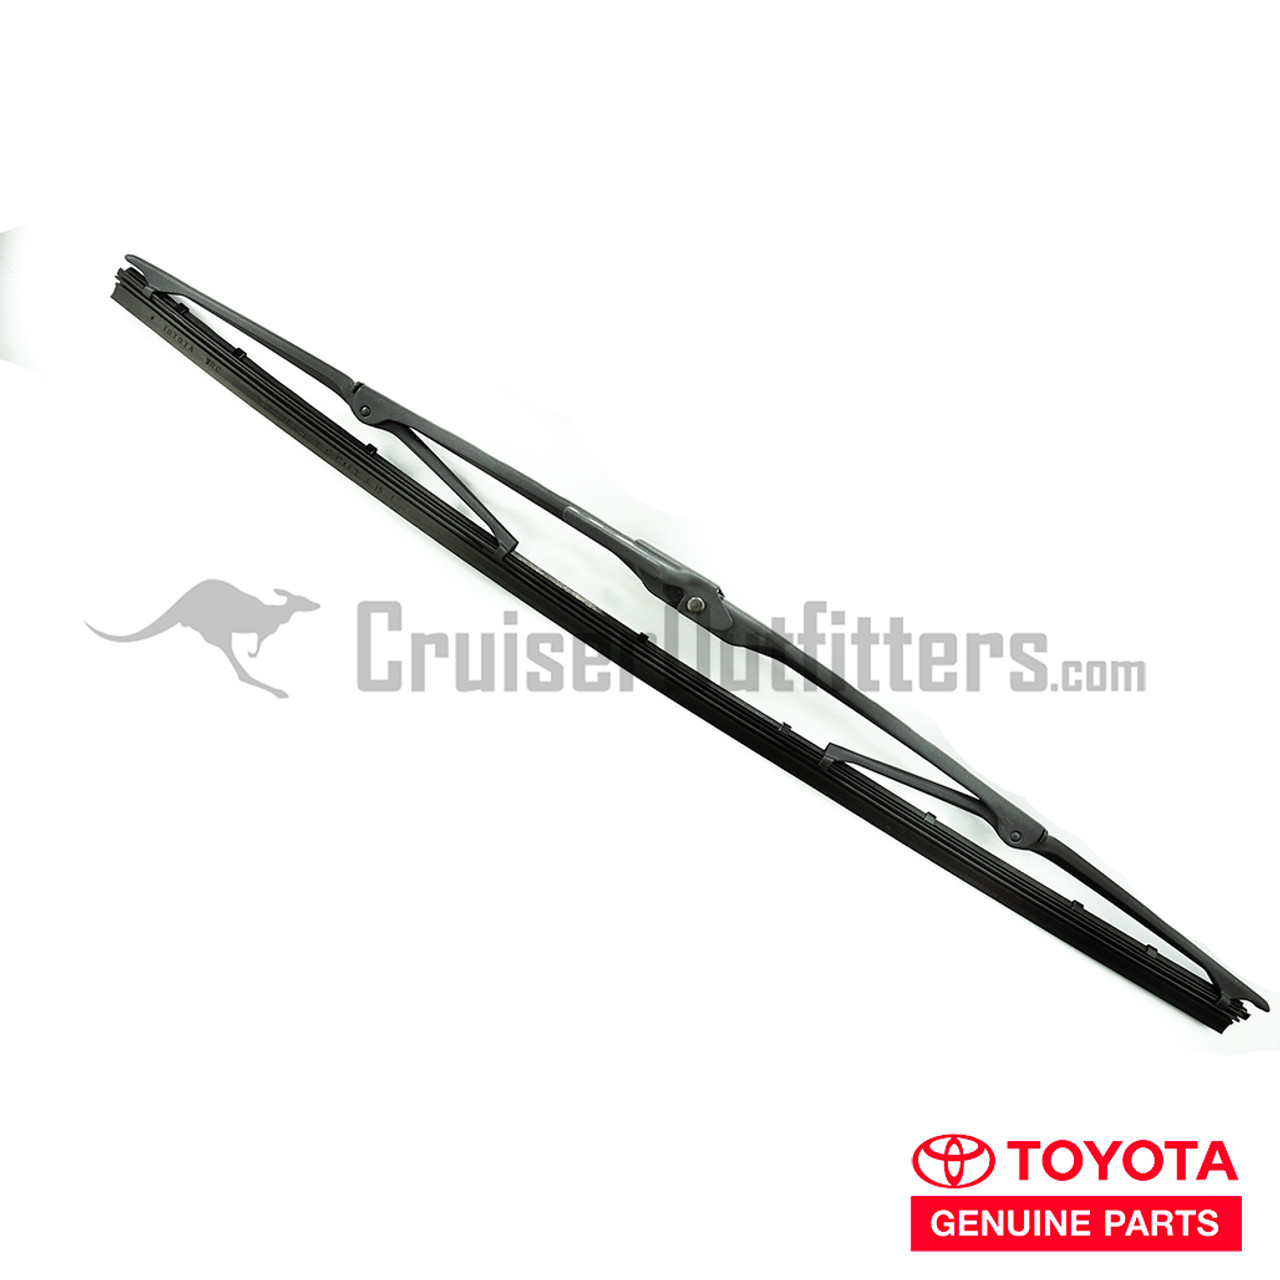 Wiper Blade - OEM Toyota - Fits 400mm (WIPB22600)